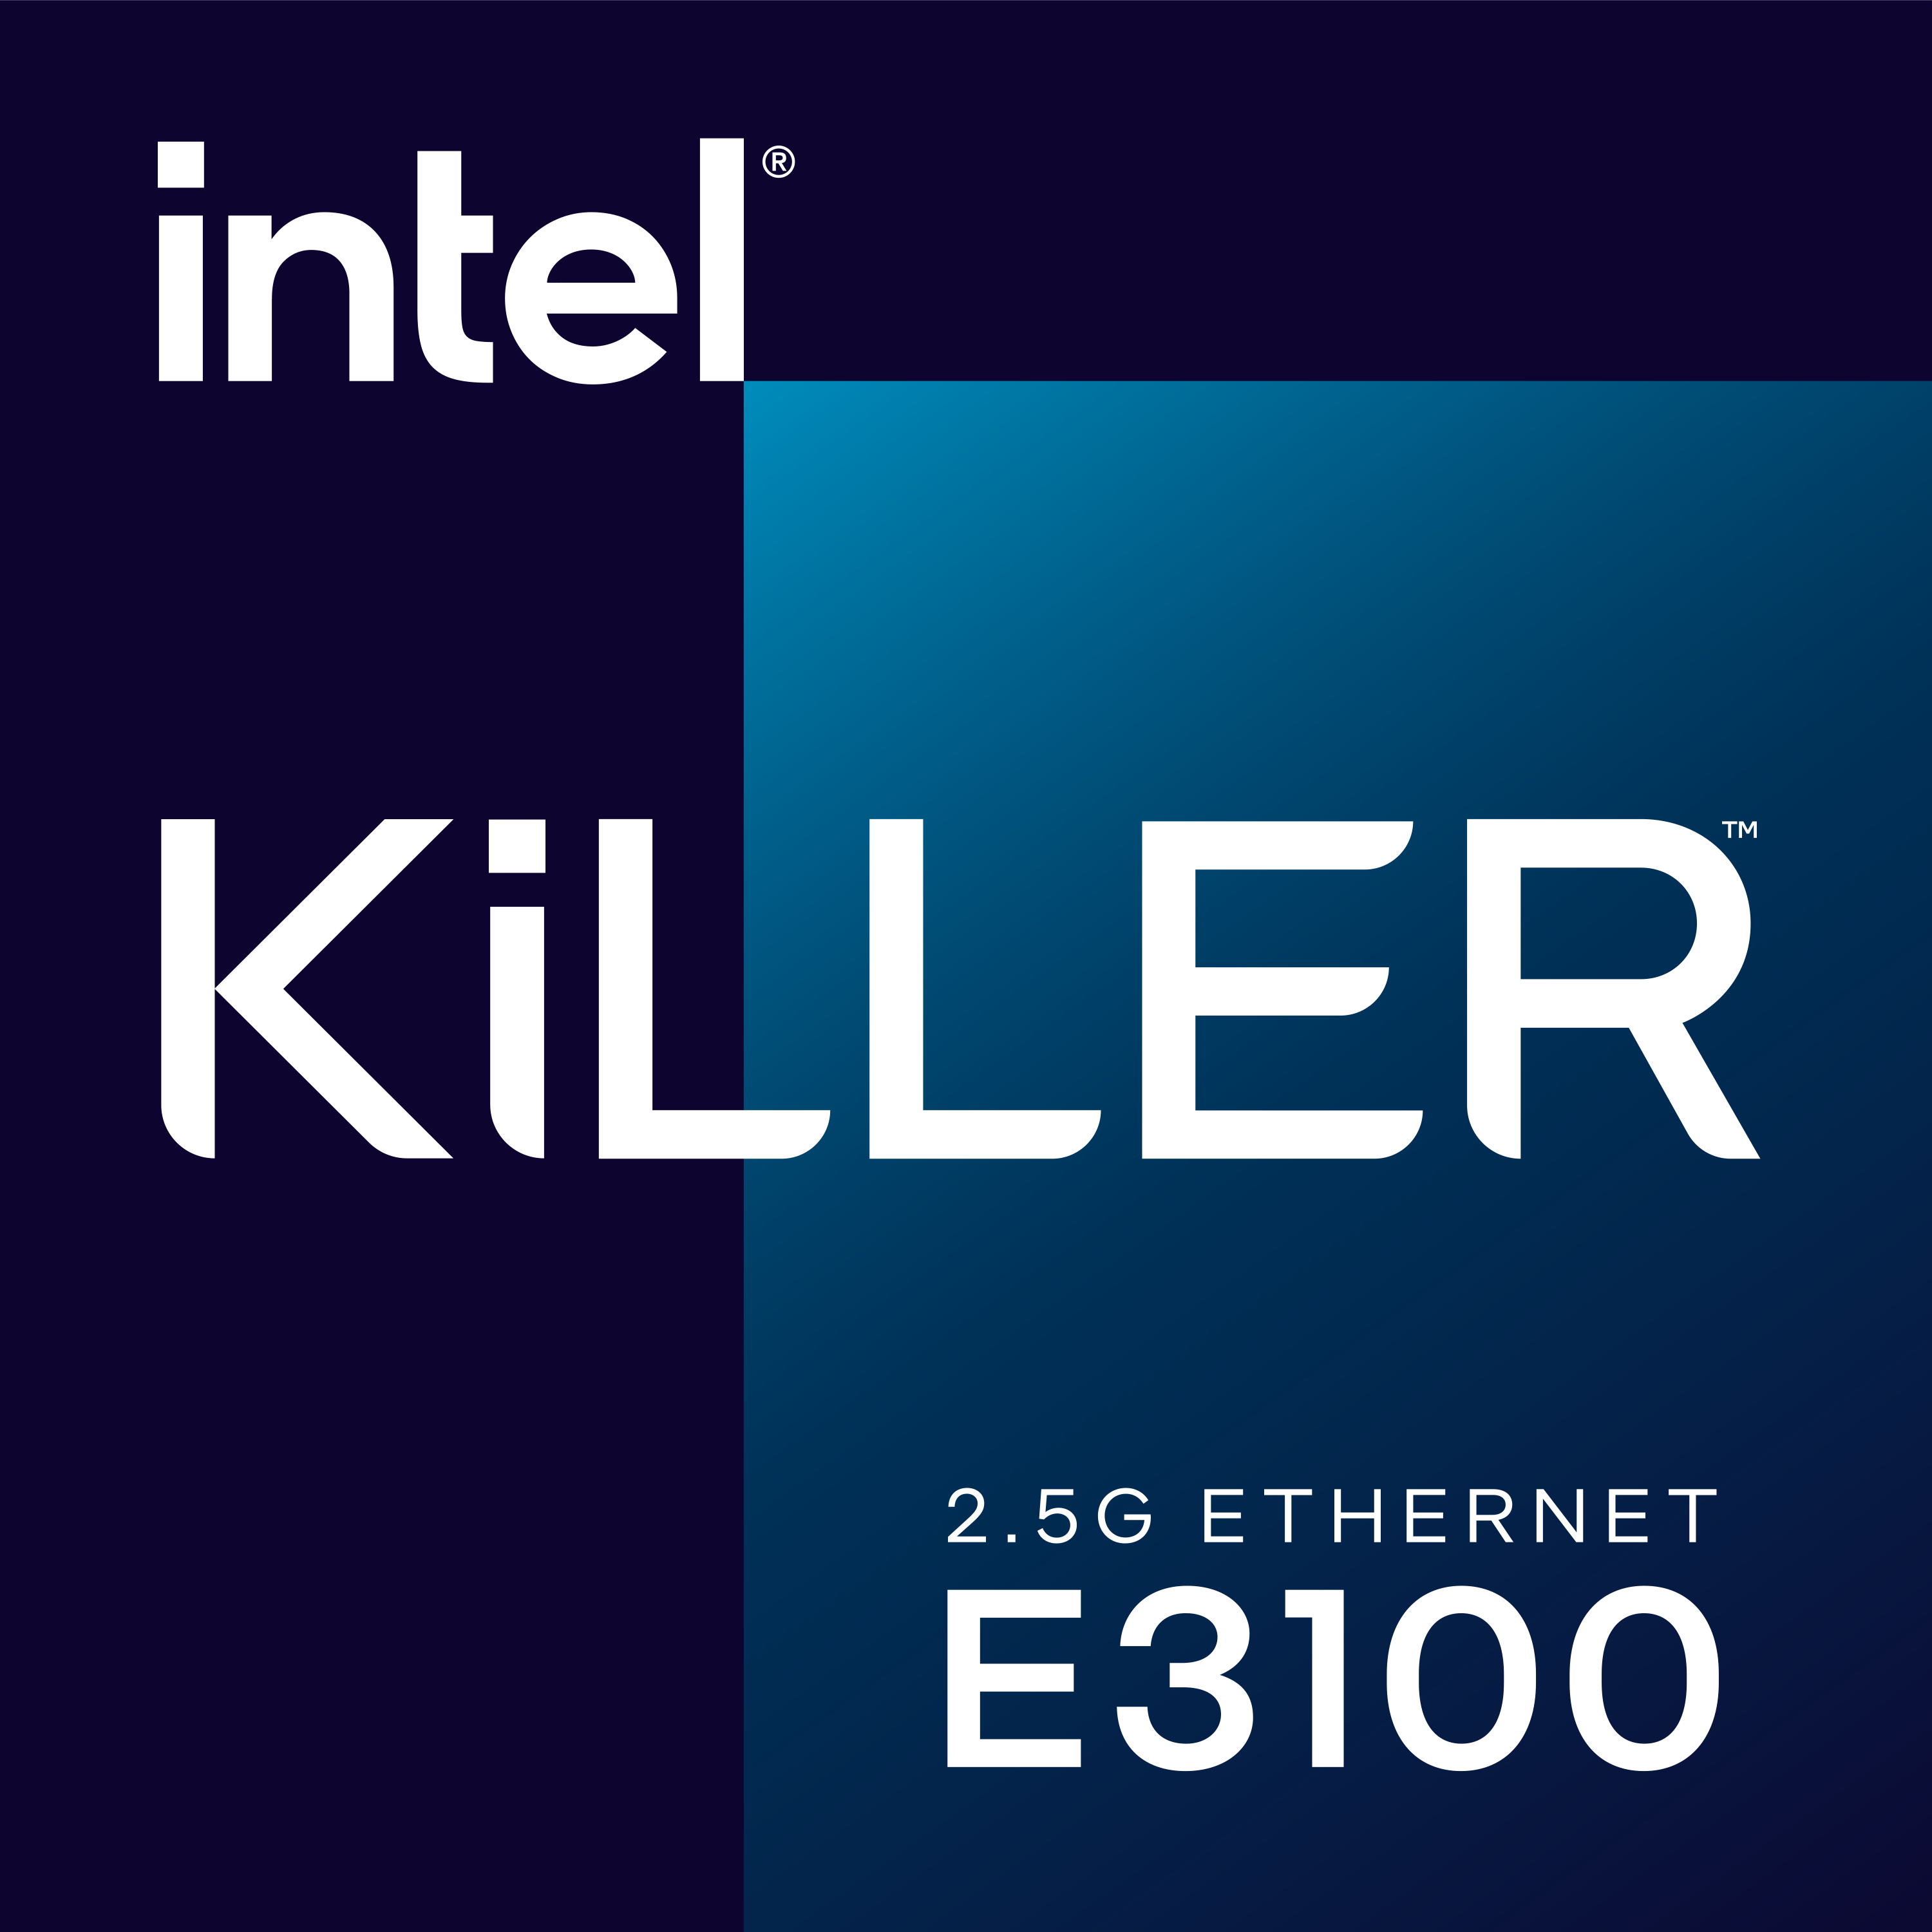 Intel Killer 2.5G Ethernet E3100